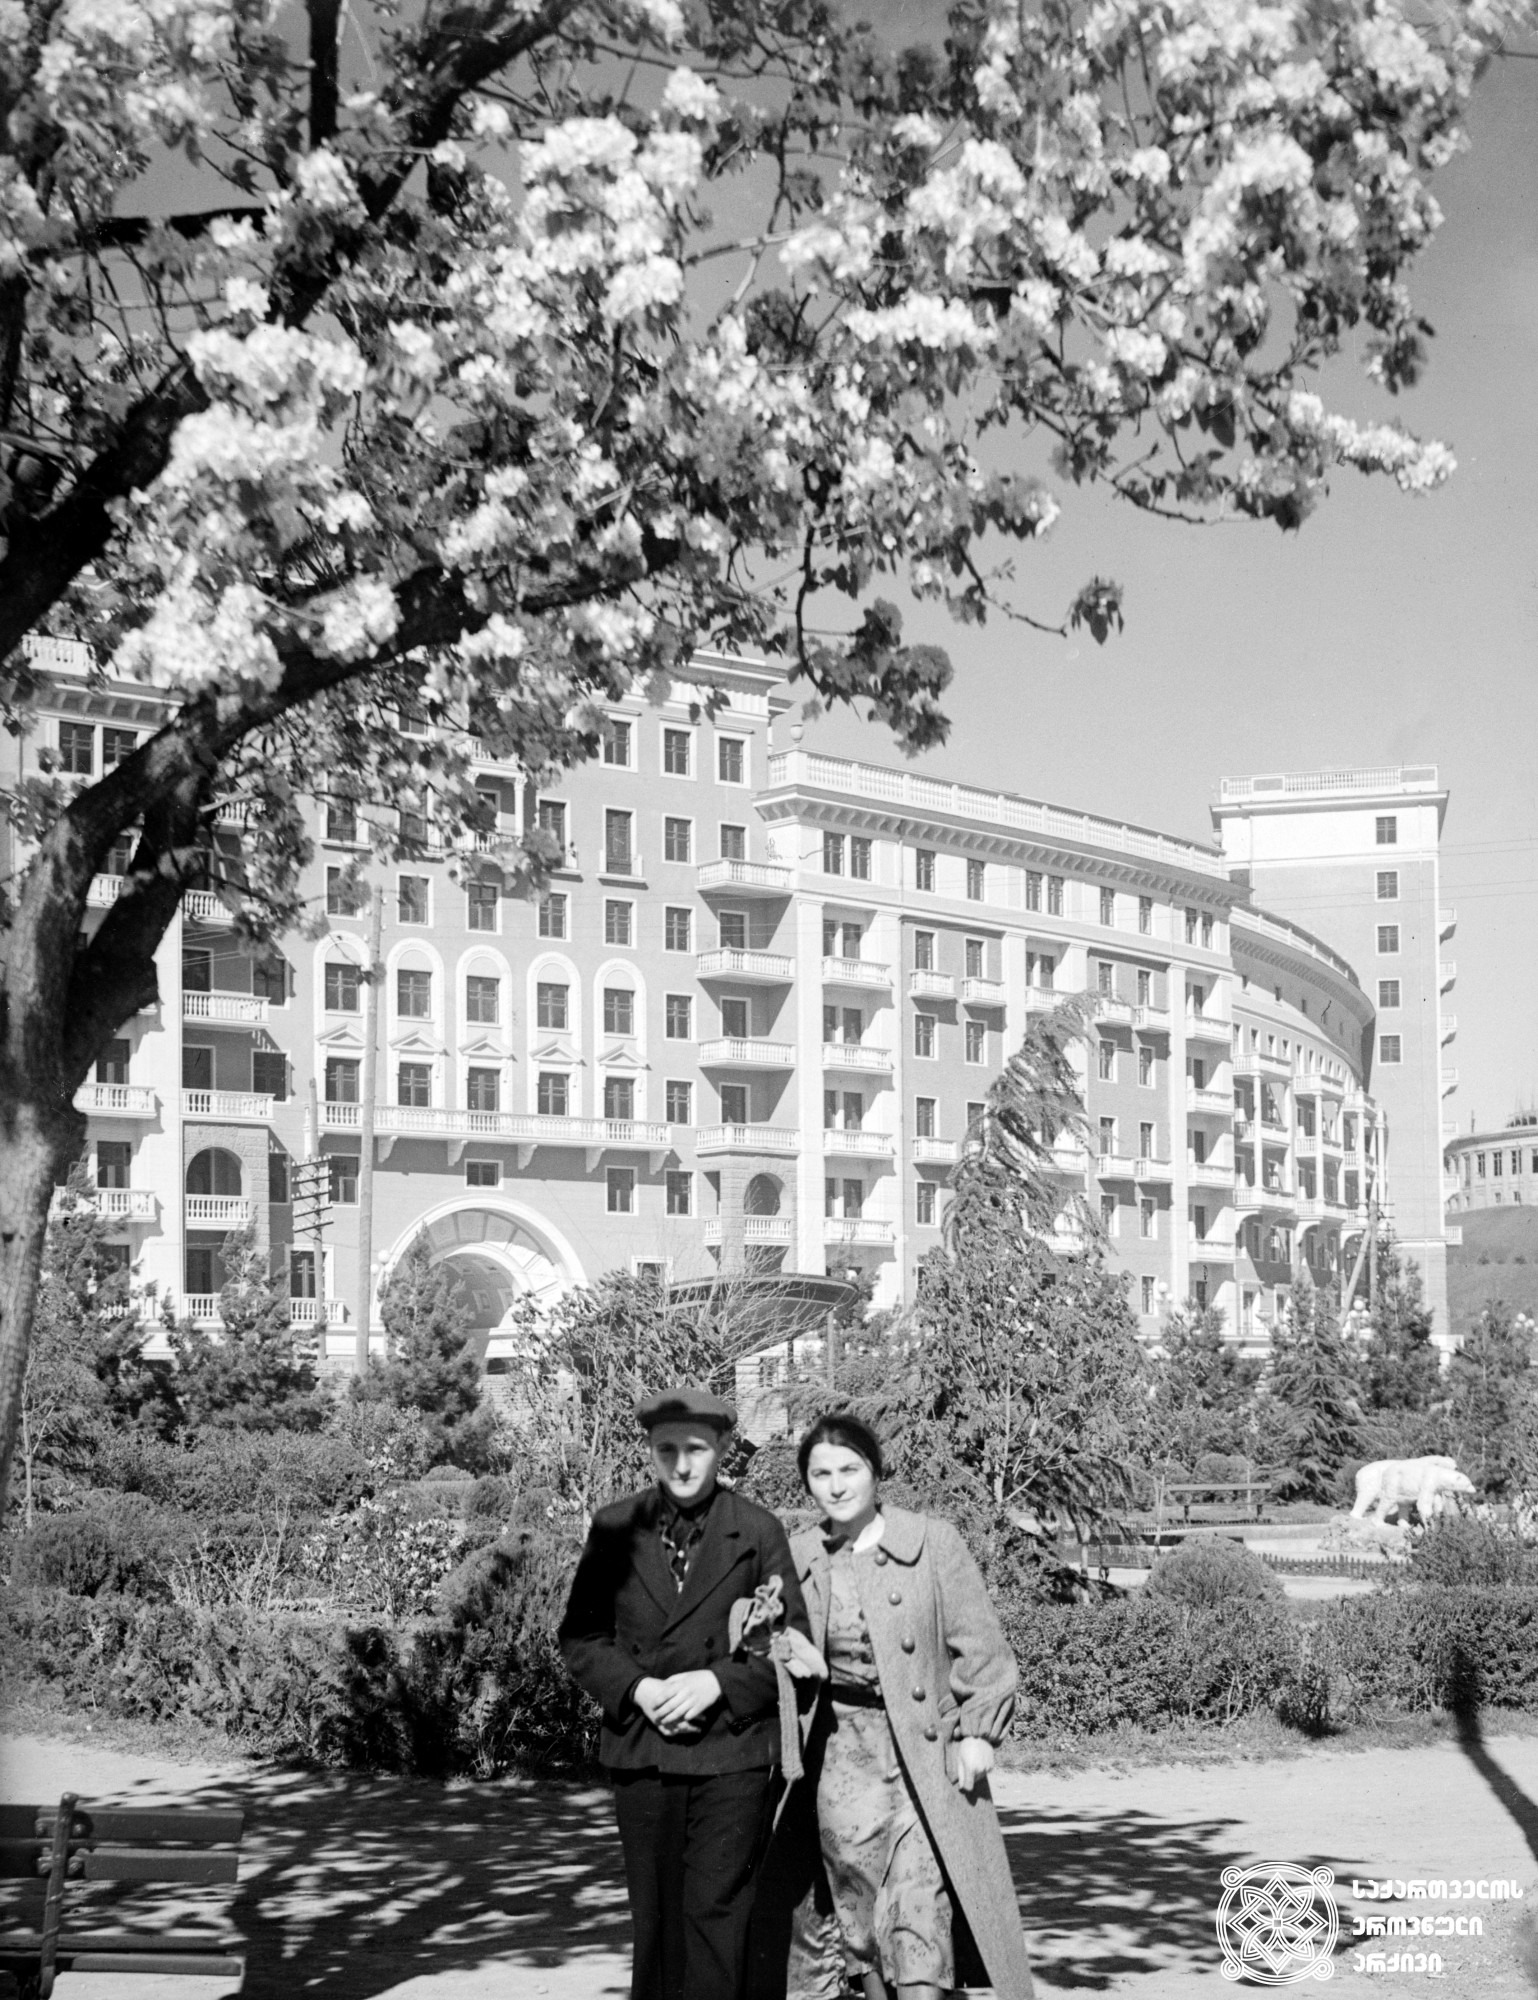 ზოოპარკი. თბილისი. <br> ფოტო: ვ. ჩერკასოვი. 1940. <br>
Zoological Garden. Tbilisi. <br> Photo by V. Cherkasov. <br>1940.